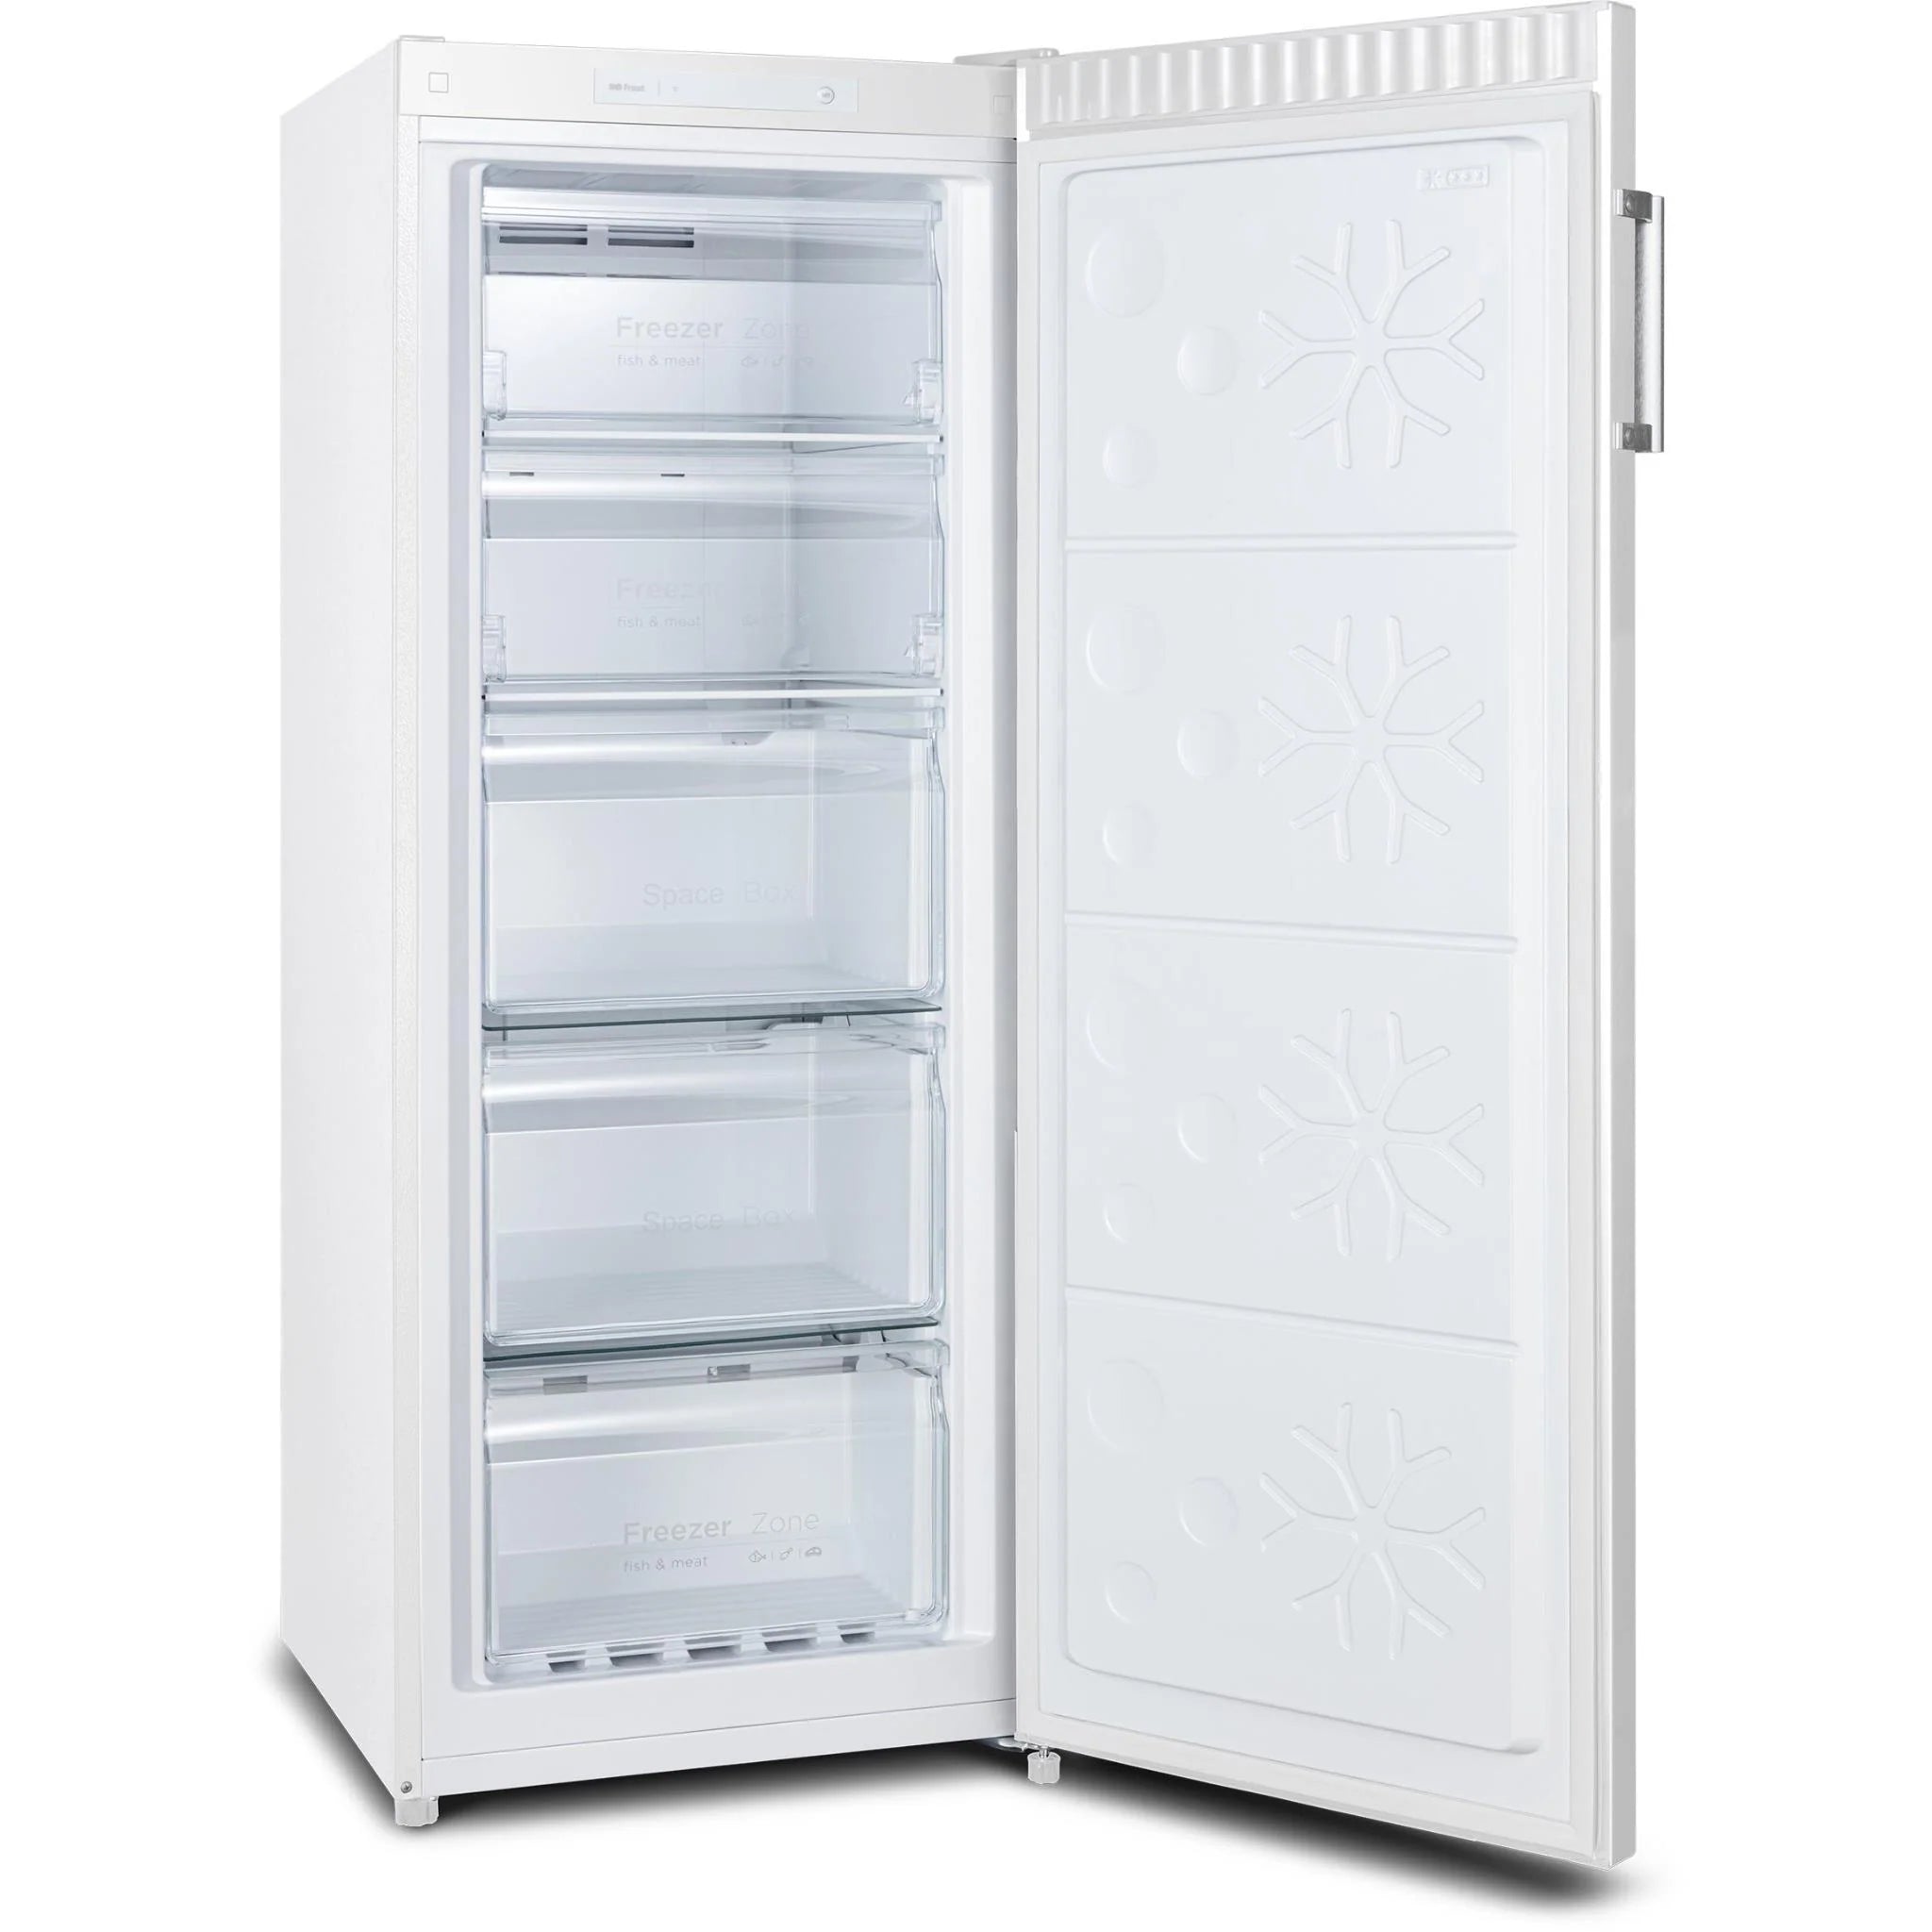 CHiQ 166L Frost-Free Upright Freezer (White)